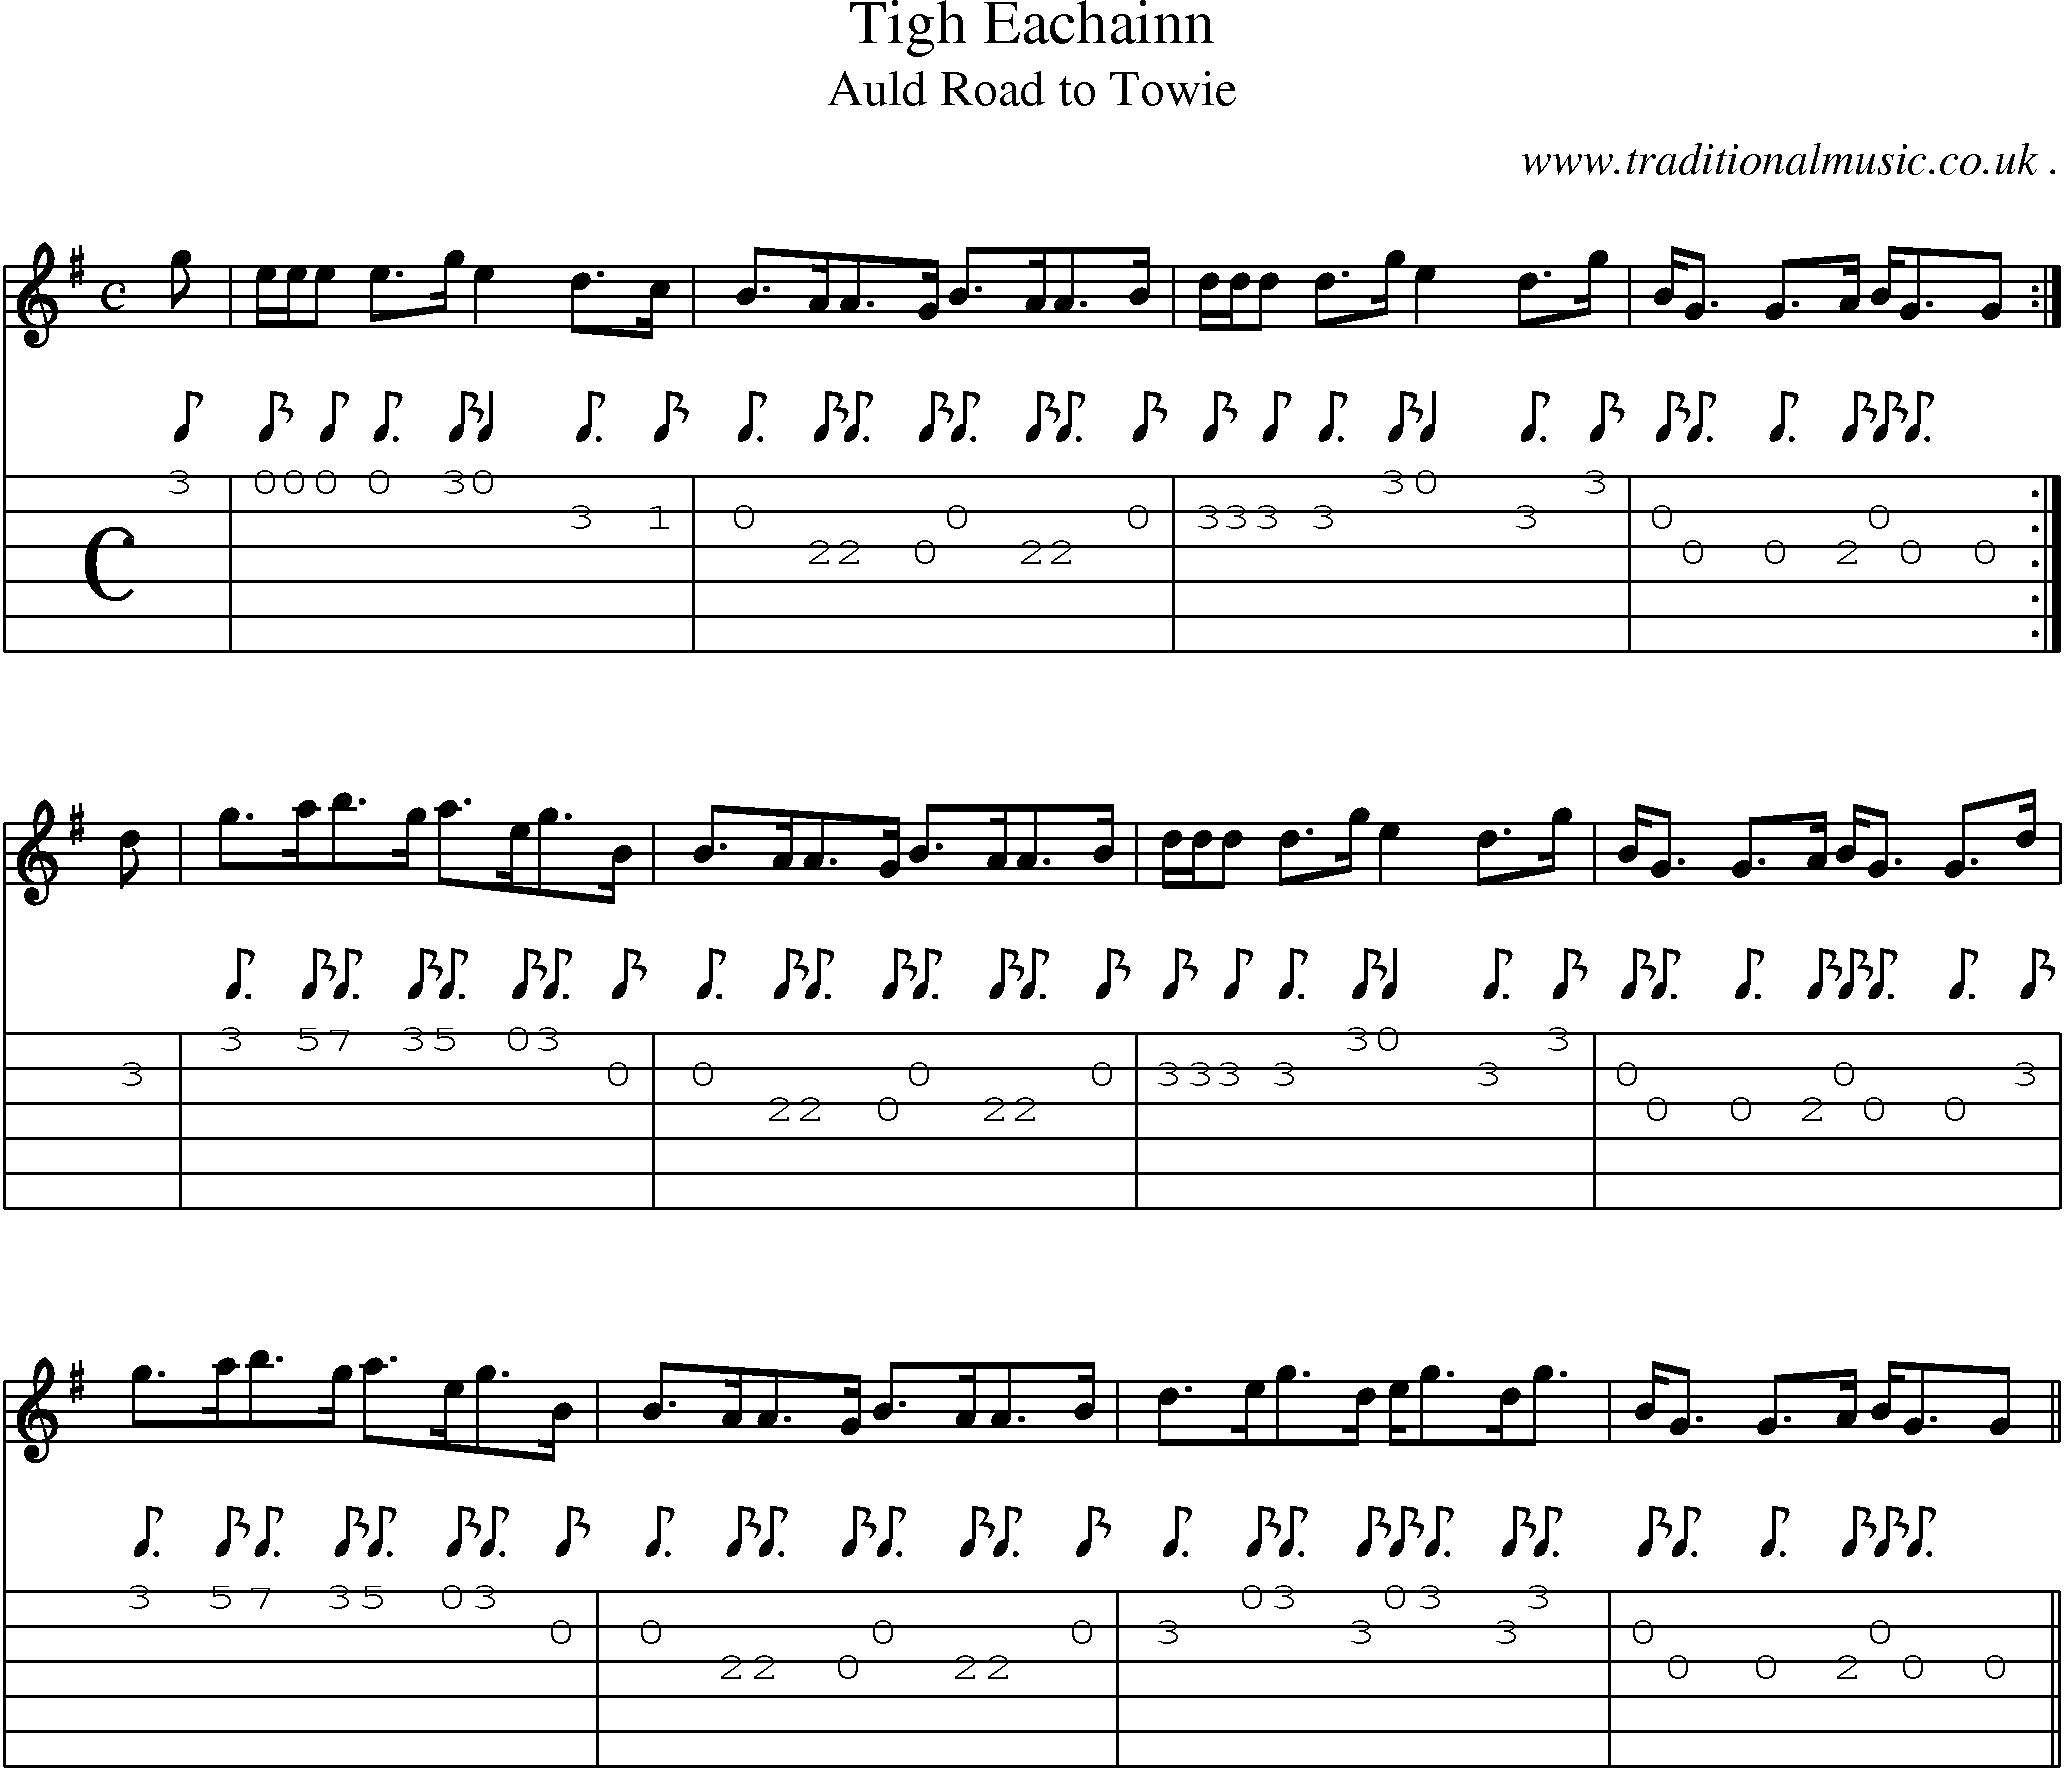 Sheet-music  score, Chords and Guitar Tabs for Tigh Eachainn